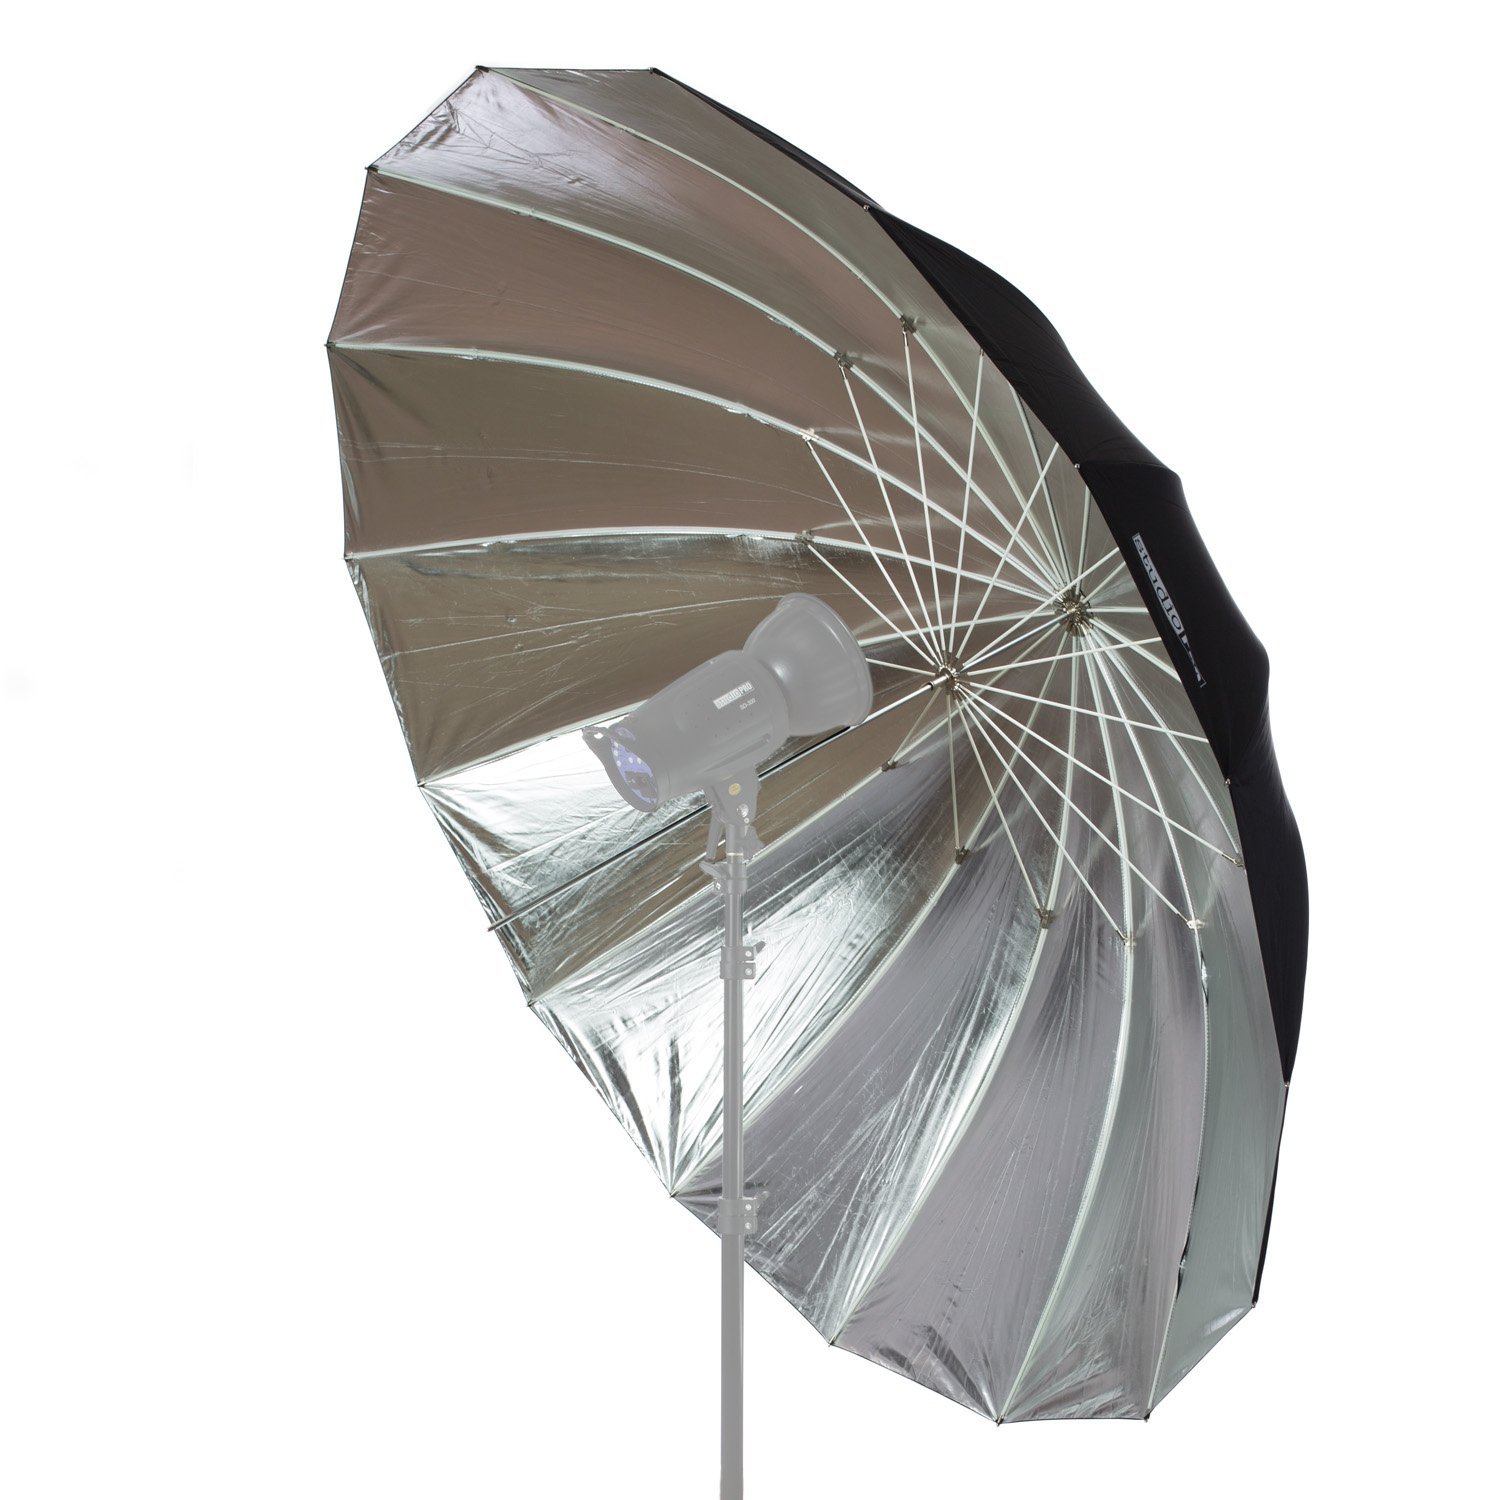 Reflector umbrella